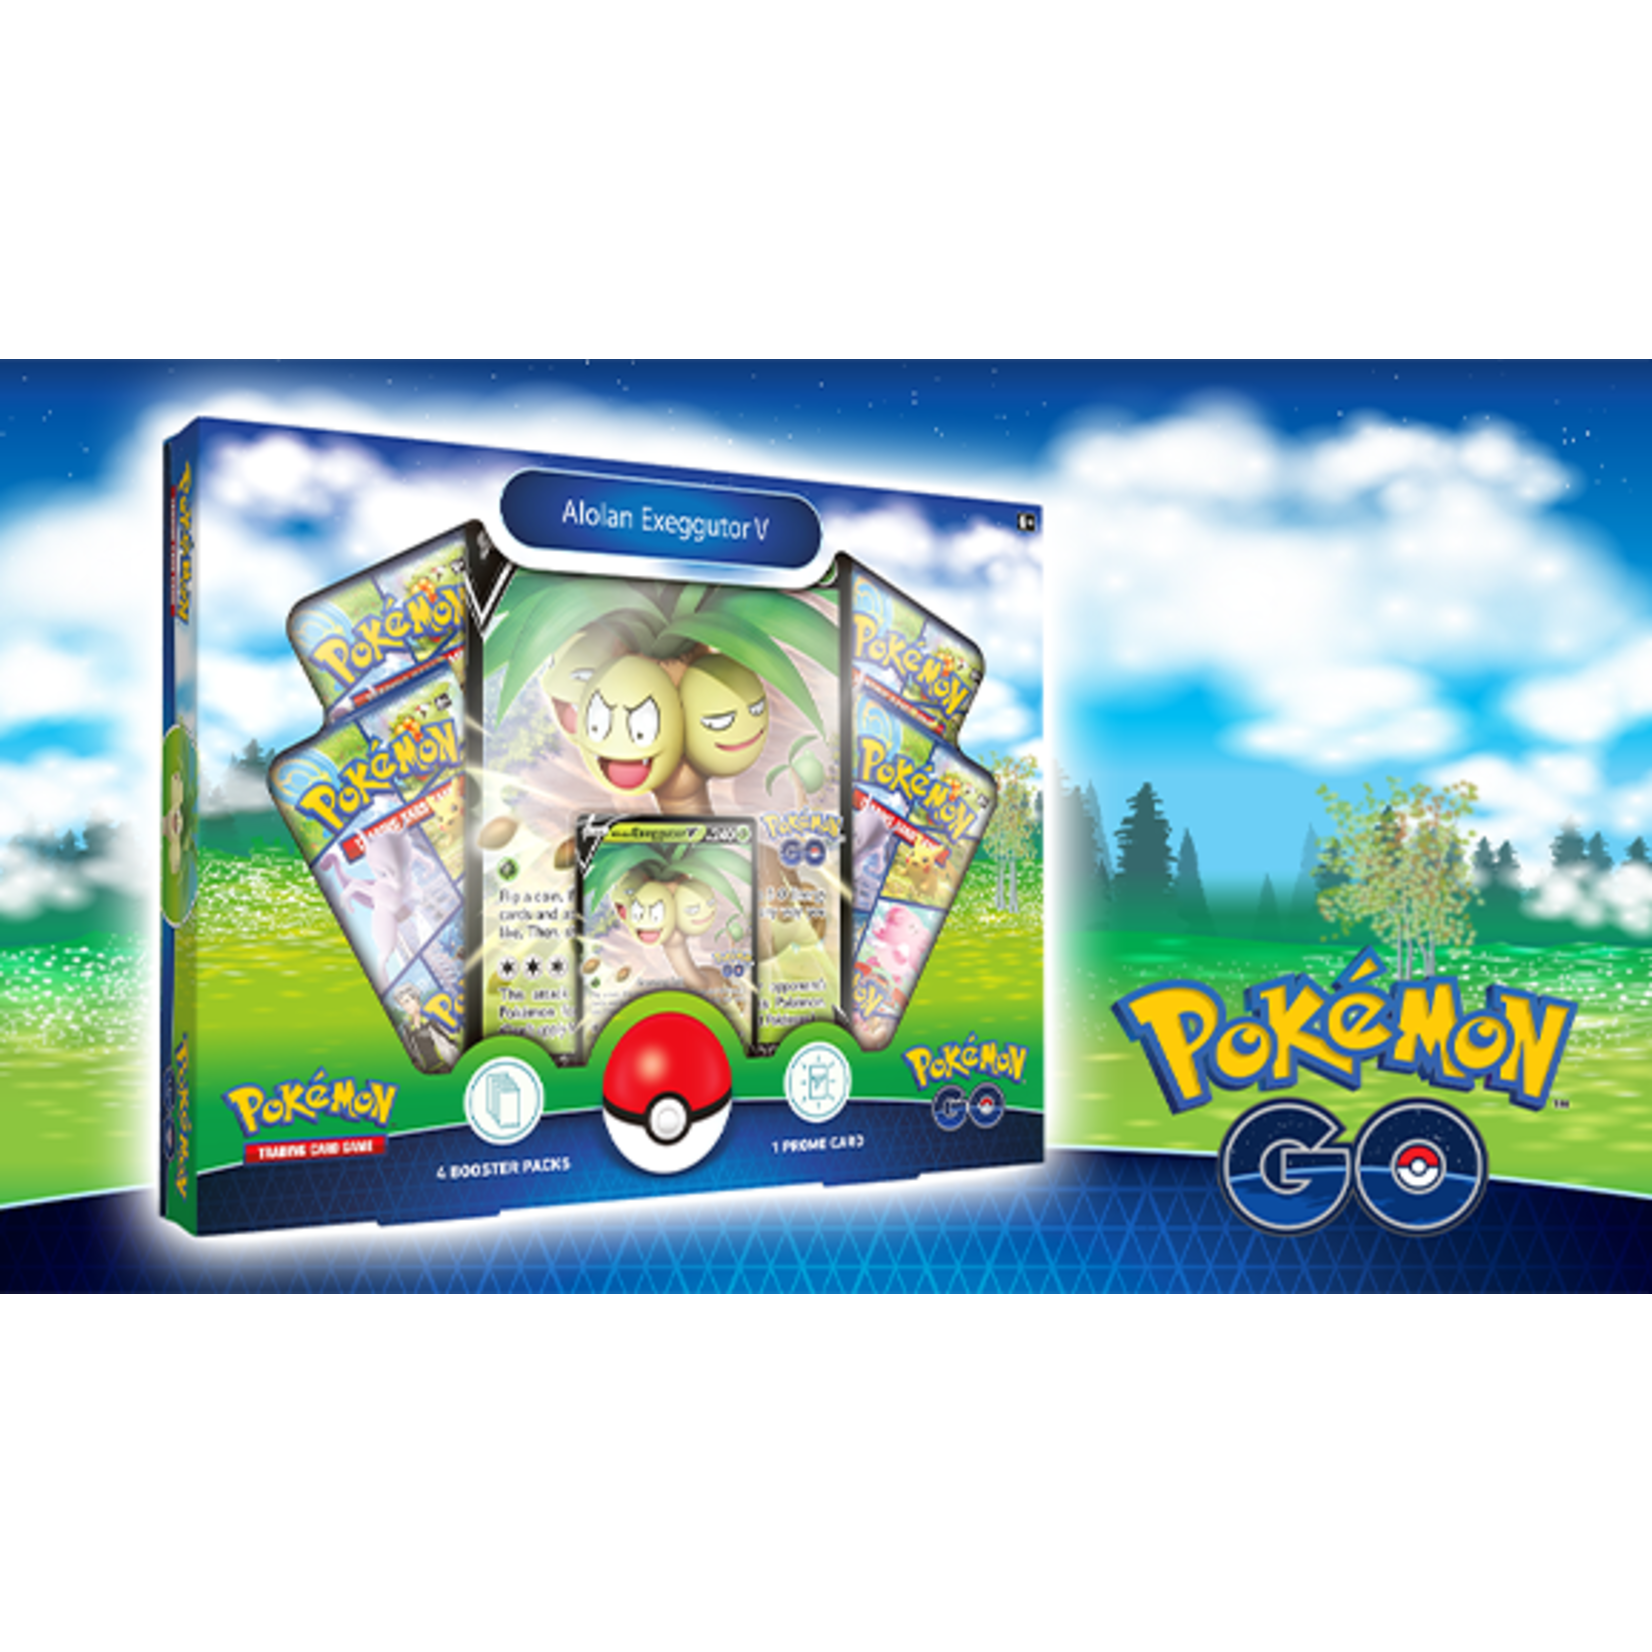 The Pokemon Company Pokémon Go V Collection Box Alolan Exeggutor